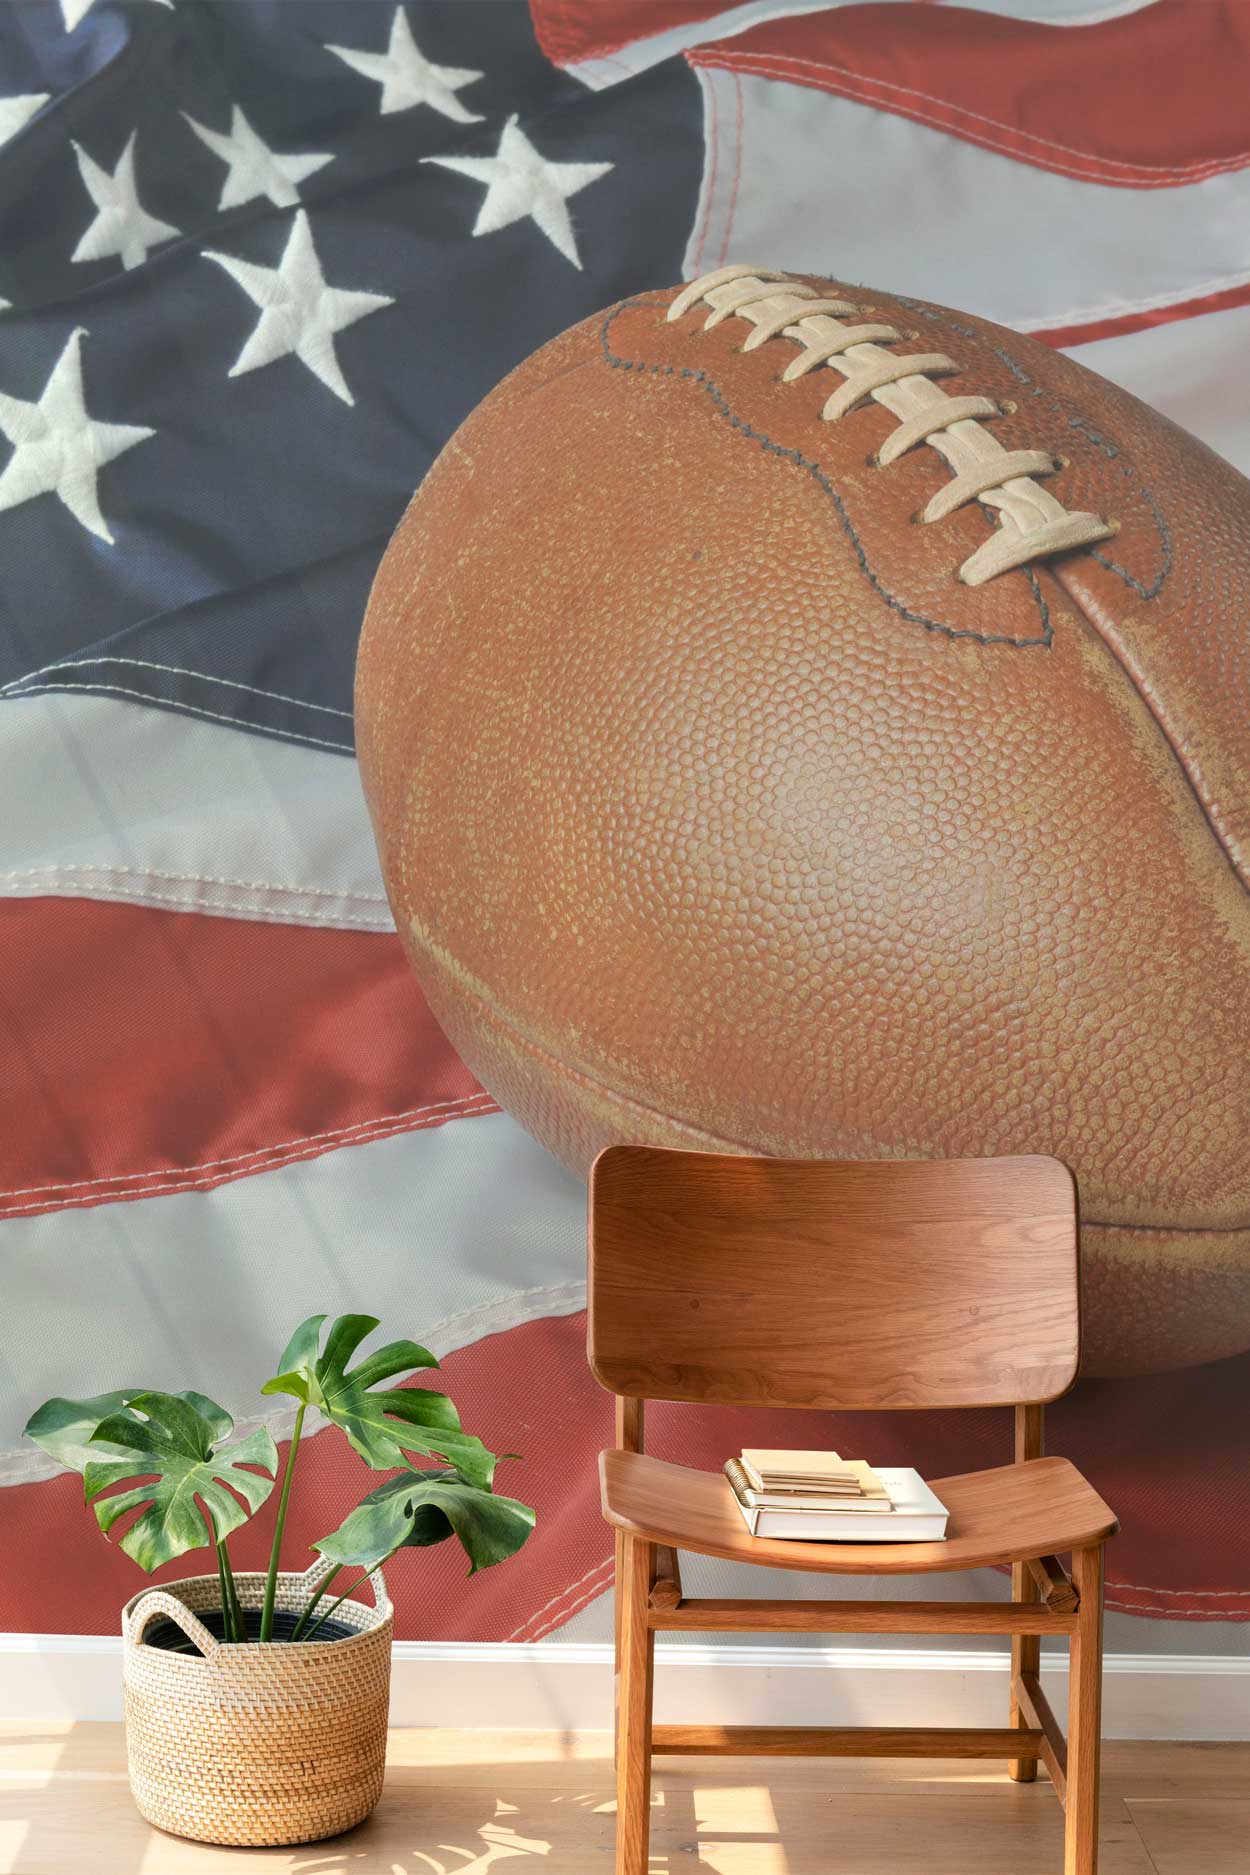 football-against-an-american-flag-wall-mural